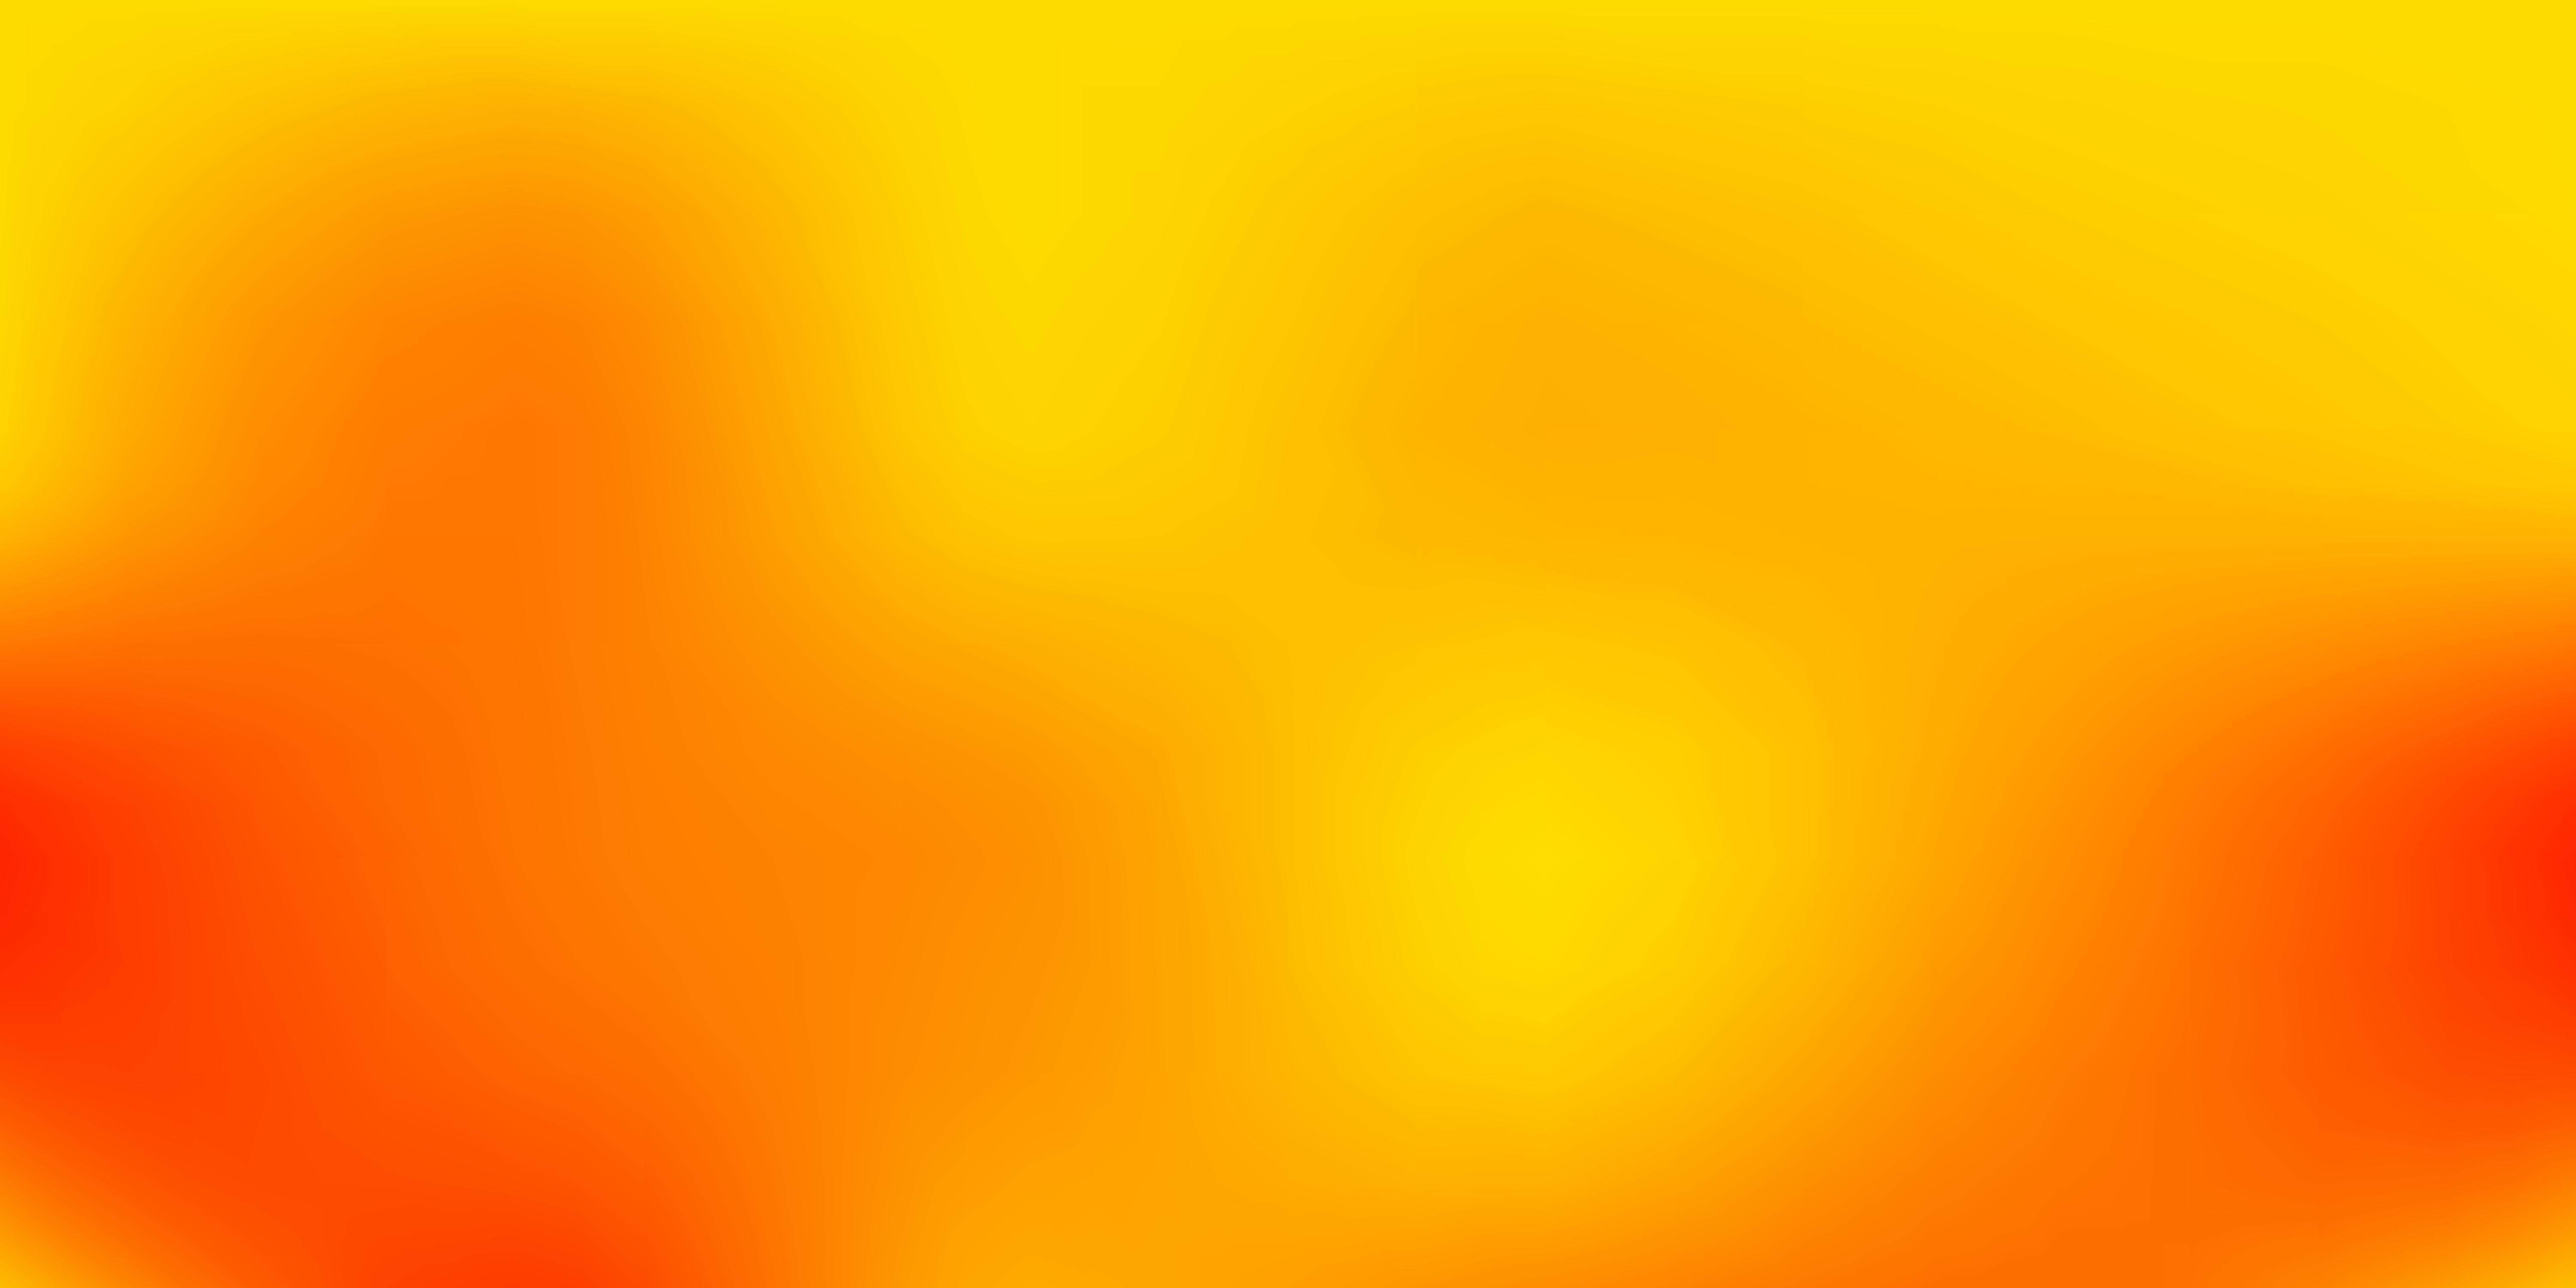 Details 300 Blur Yellow Background Abzlocalmx